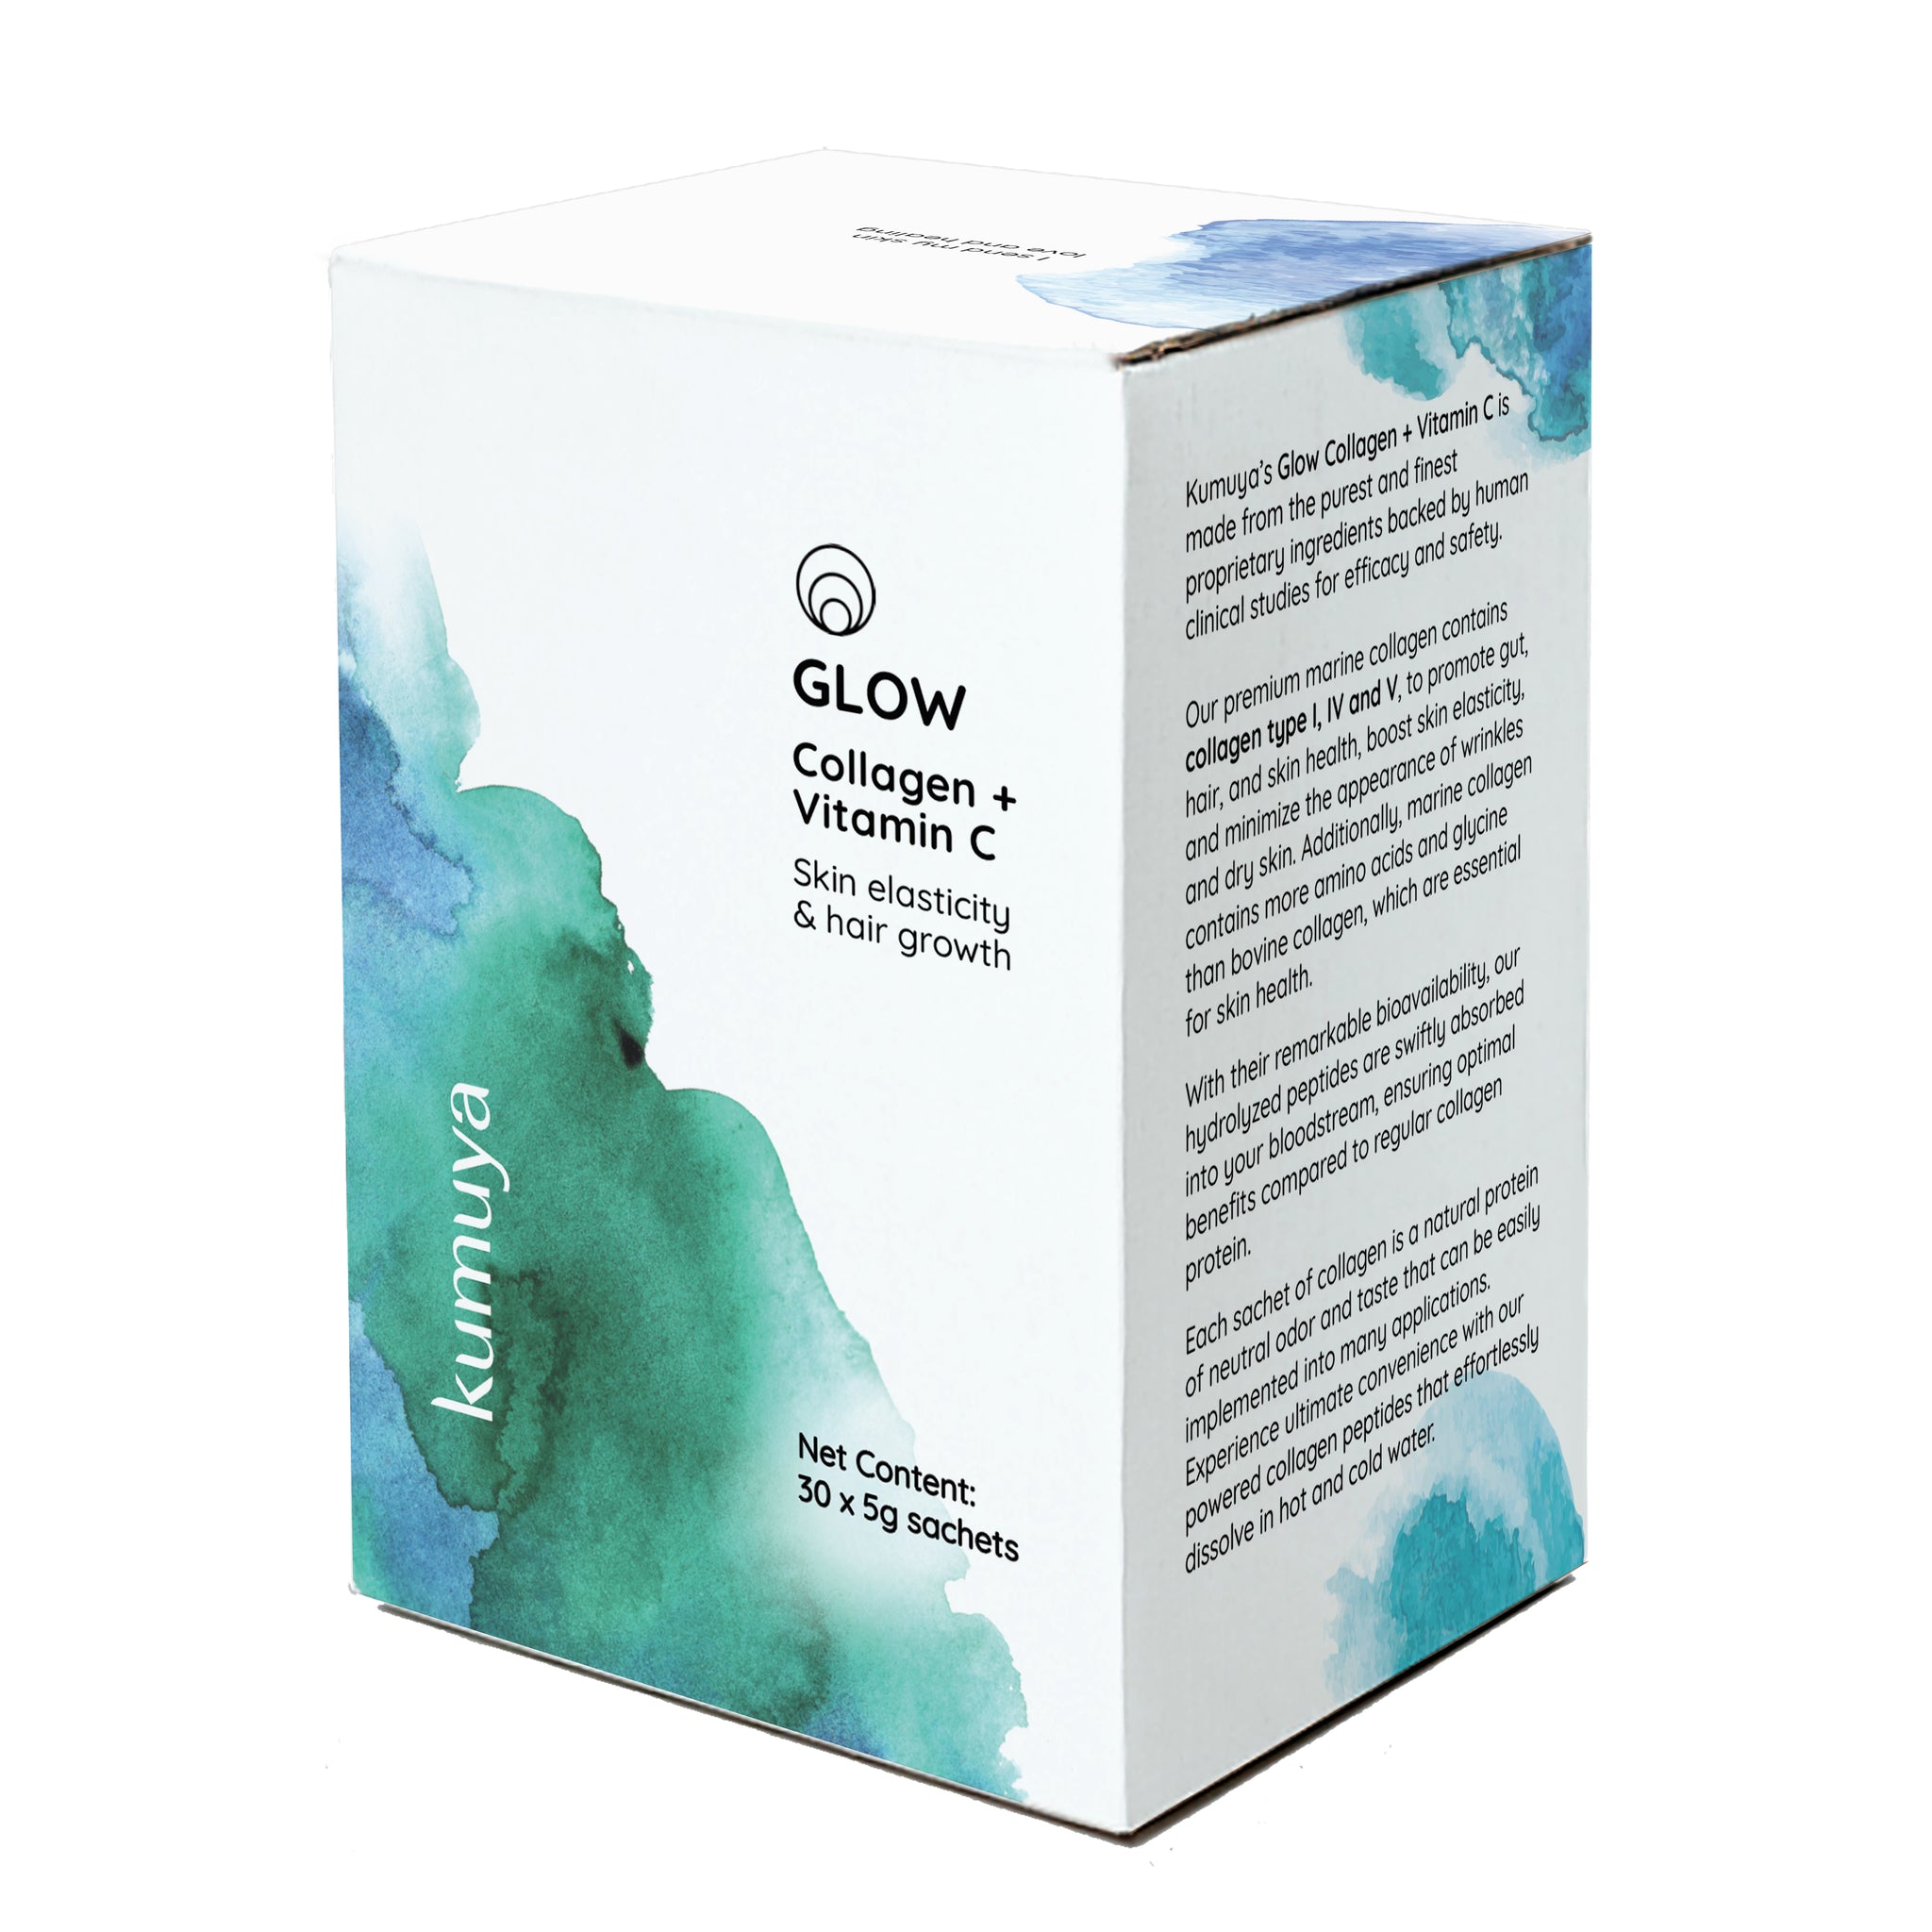 GLOW Collagen + Vitamin C